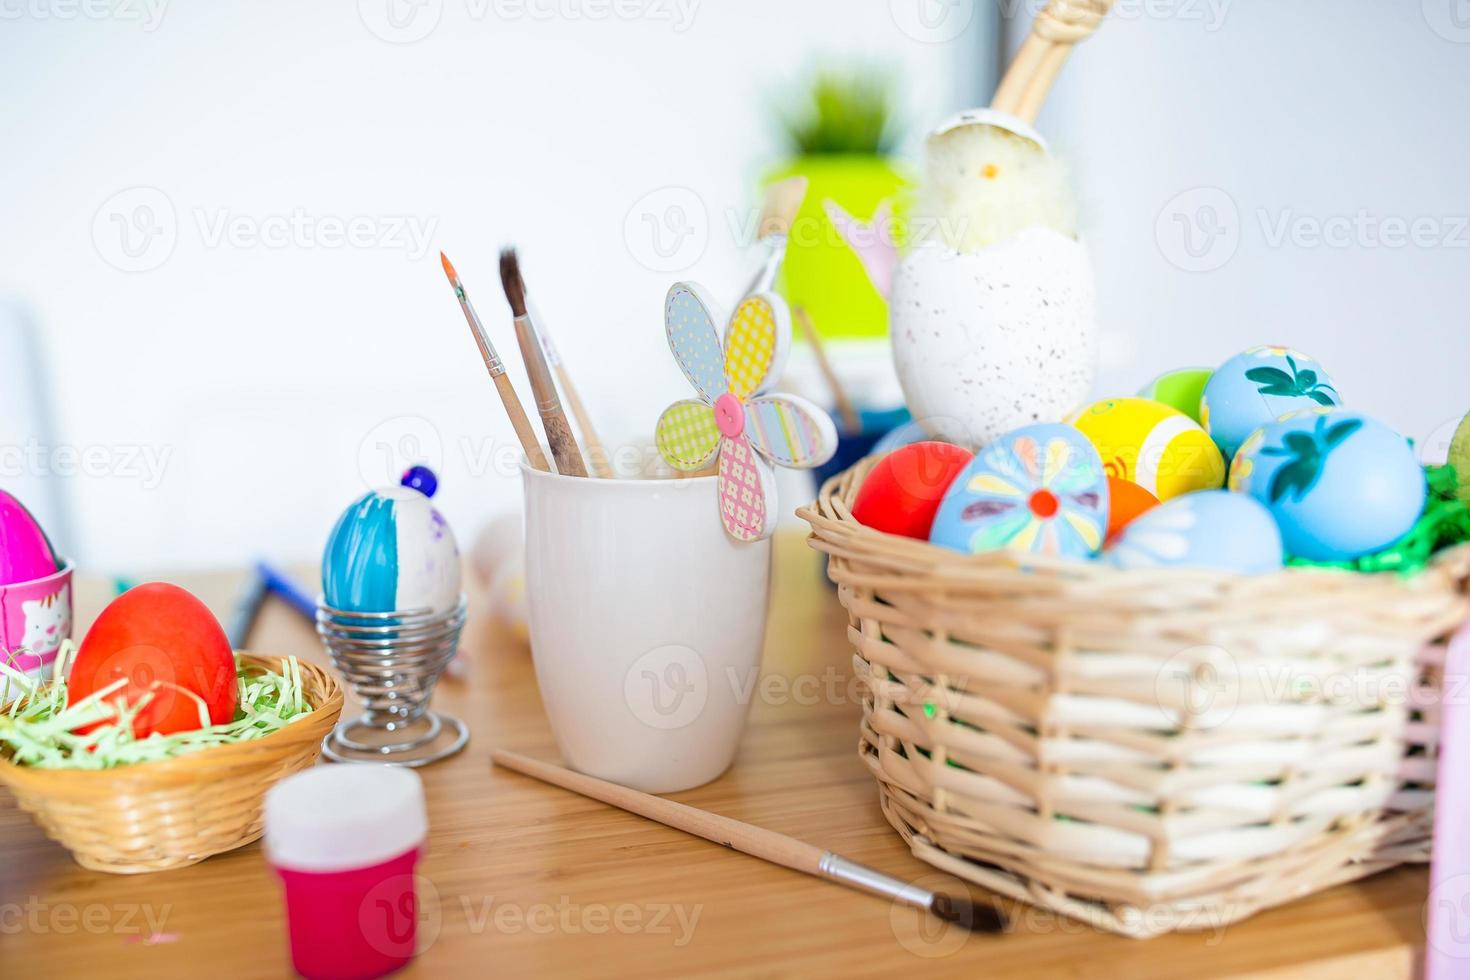 Felices Pascuas. huevos, pinturas, pinceles para pintar huevos foto